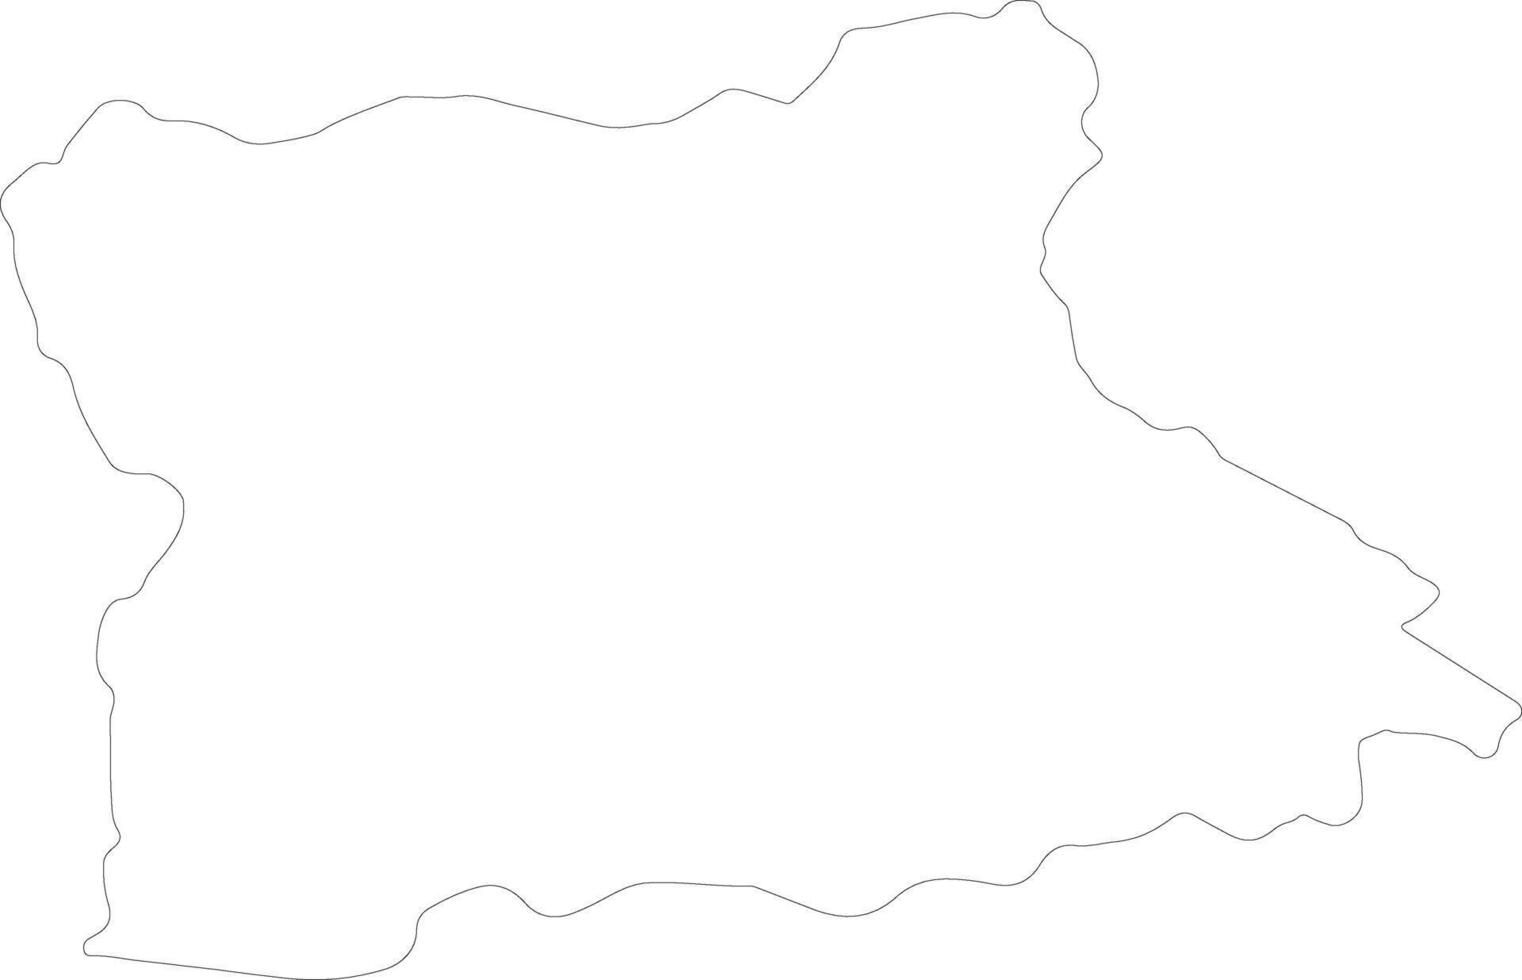 blagoevgrad bulgarien översikt Karta vektor